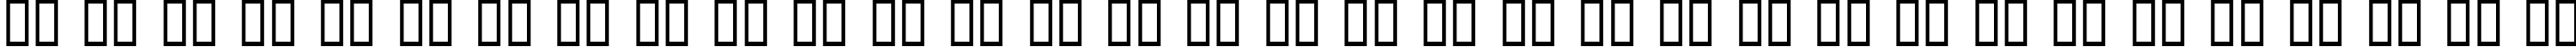 Пример написания русского алфавита шрифтом Quadlateral